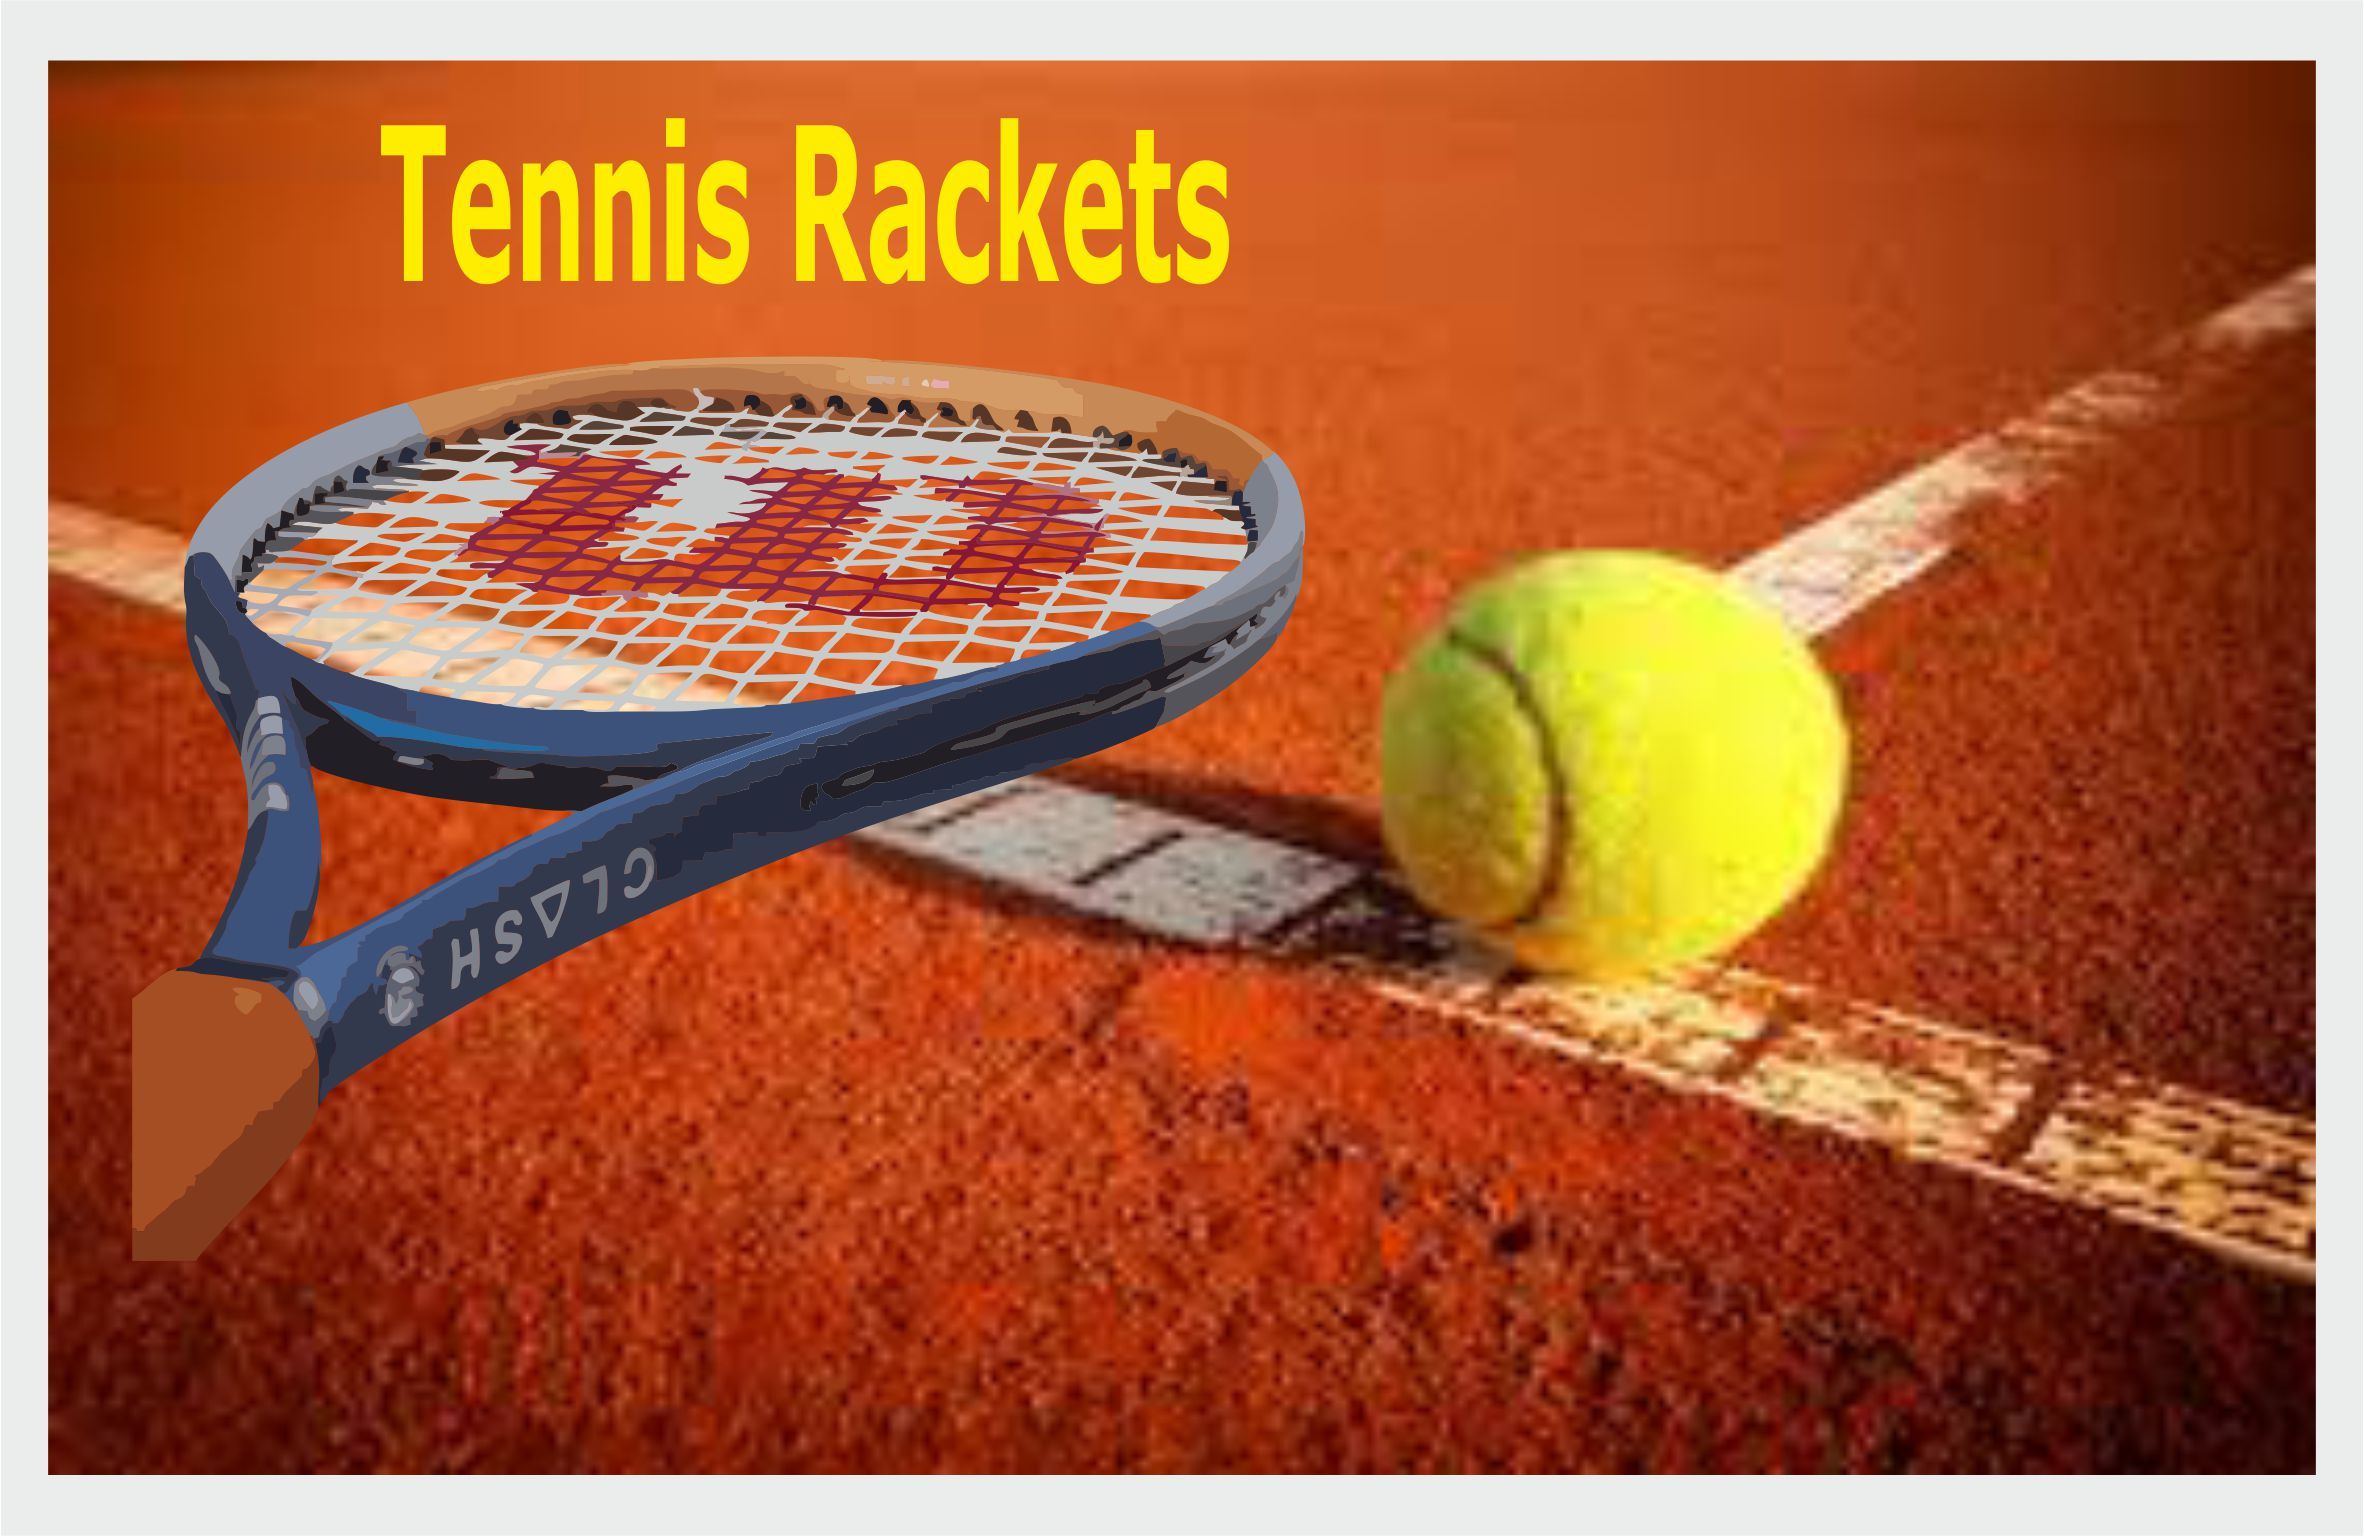 Tennisrackets